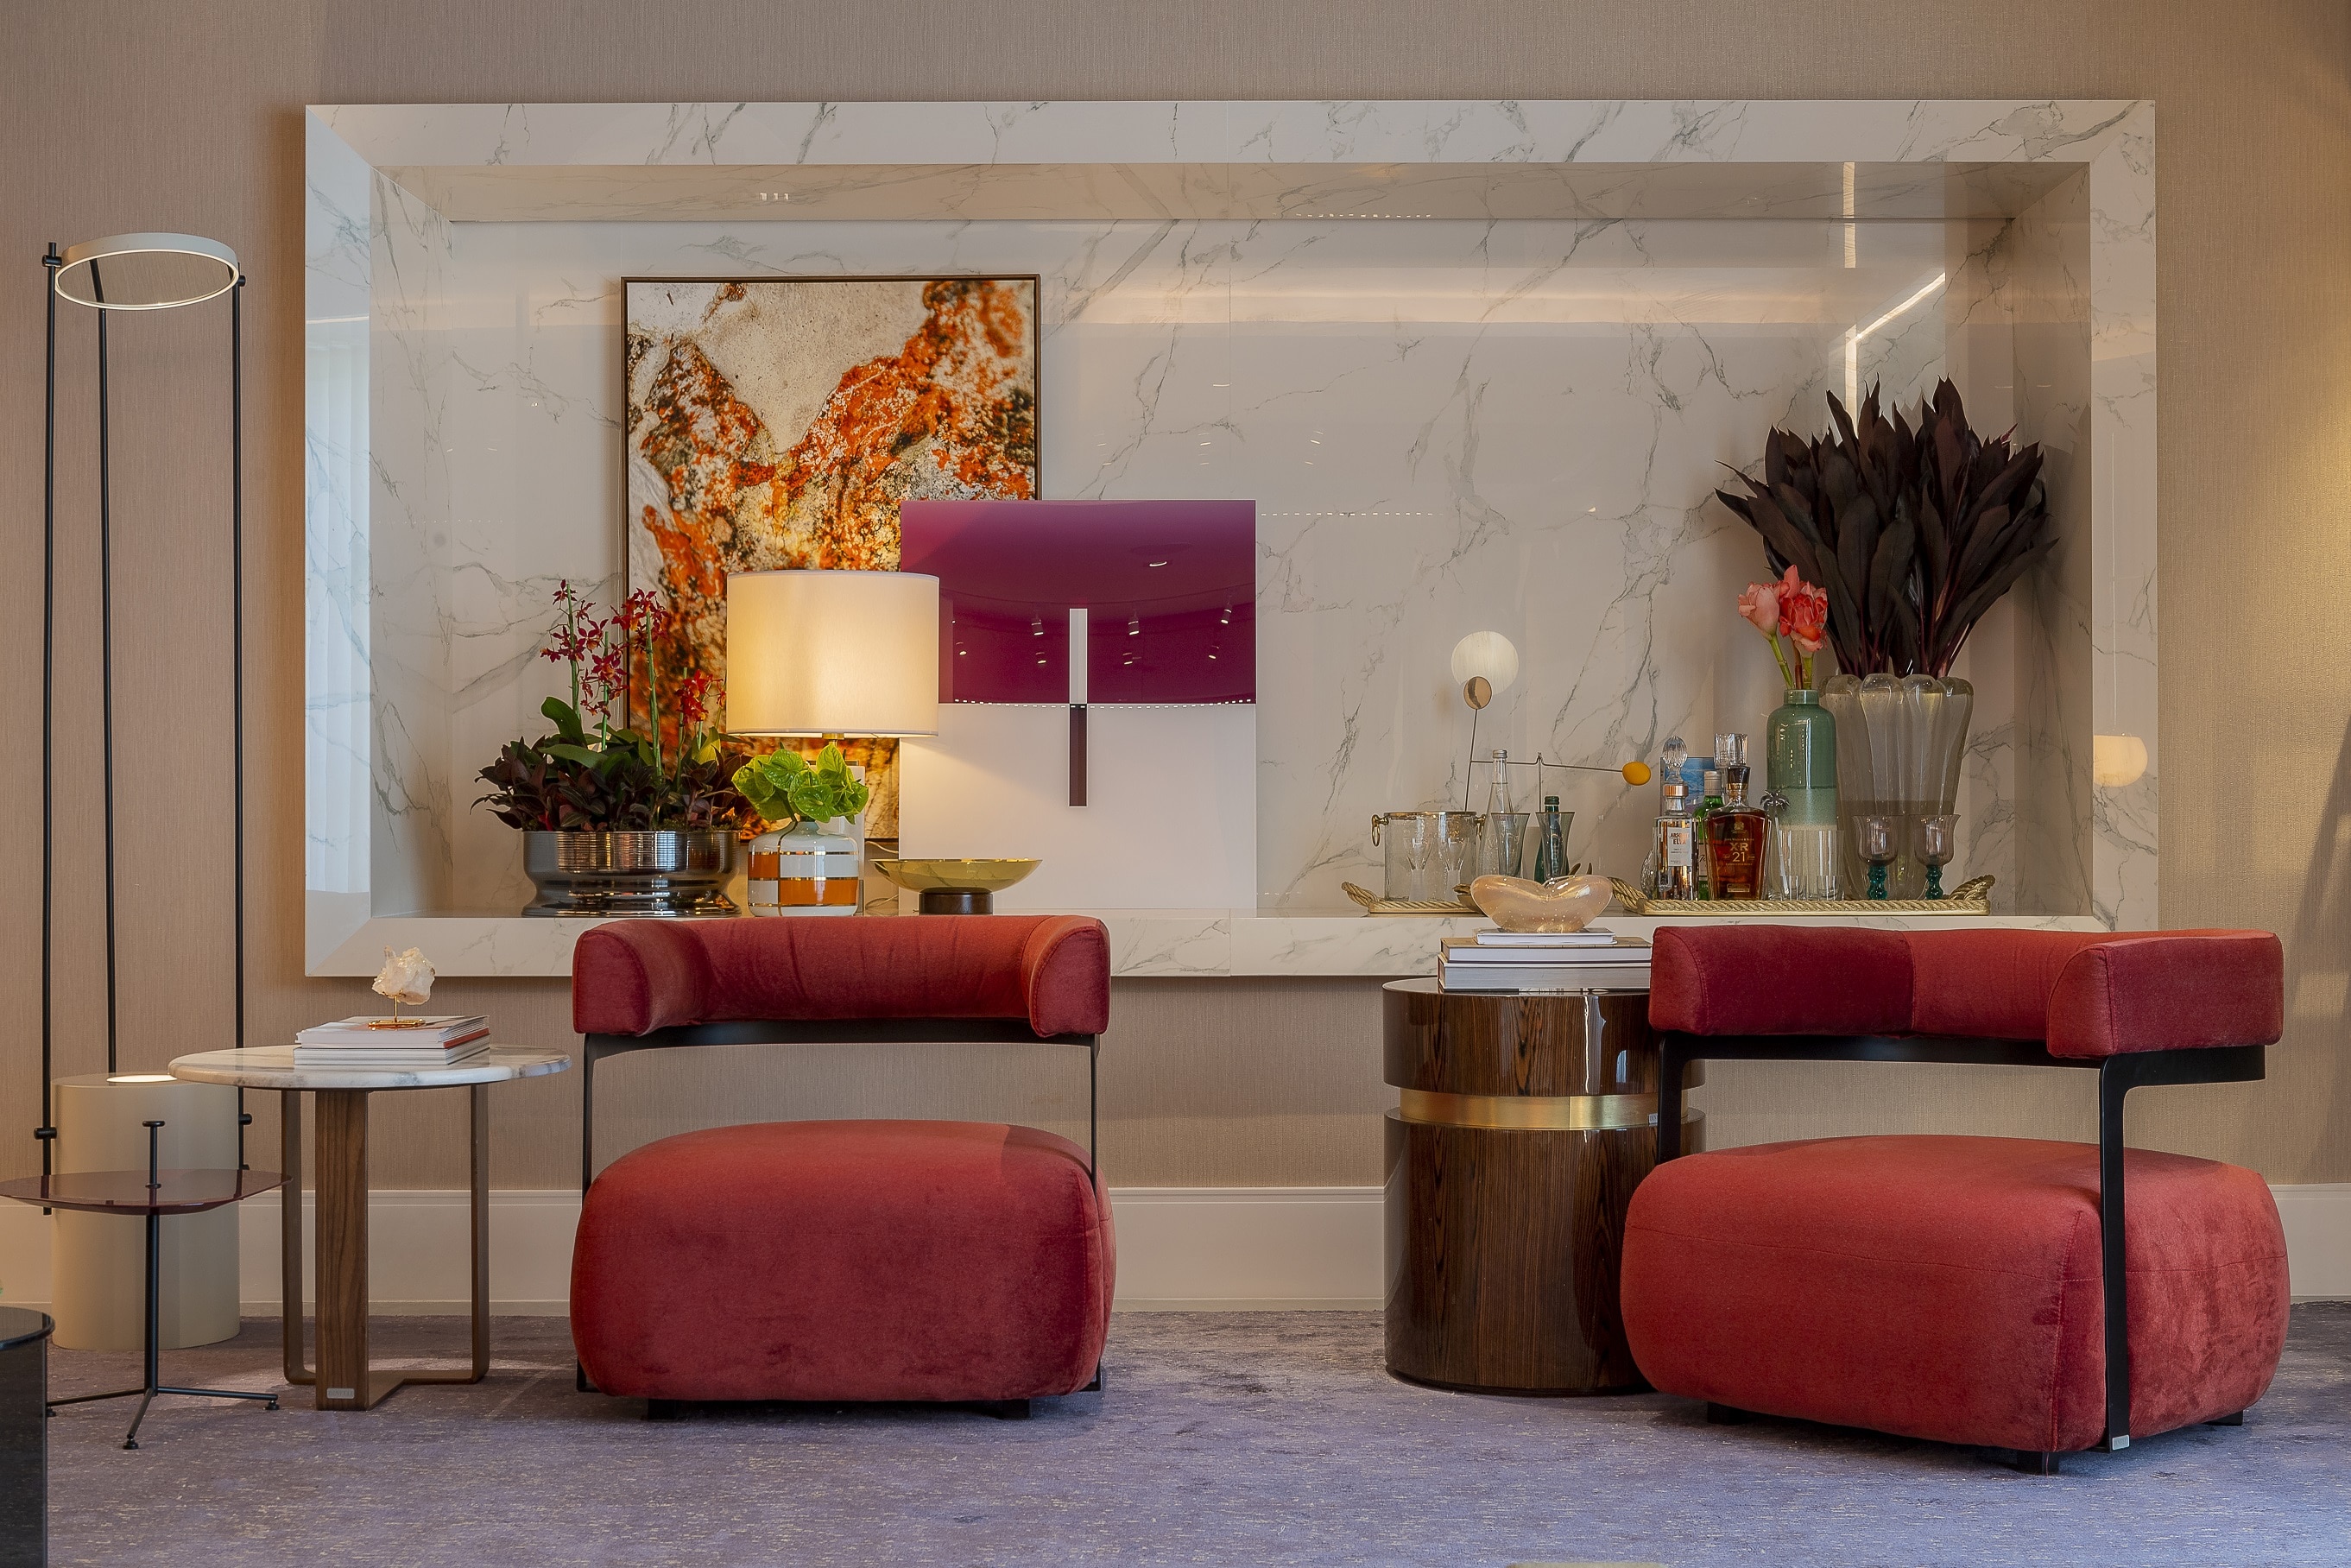 Casa Cor 2019: Linie Lounge
 Parede revestida com papel de parede muse, poltronas com design moderno, mesinhas, tapete grande e um espaço no centro da parede revestido com mármore. 